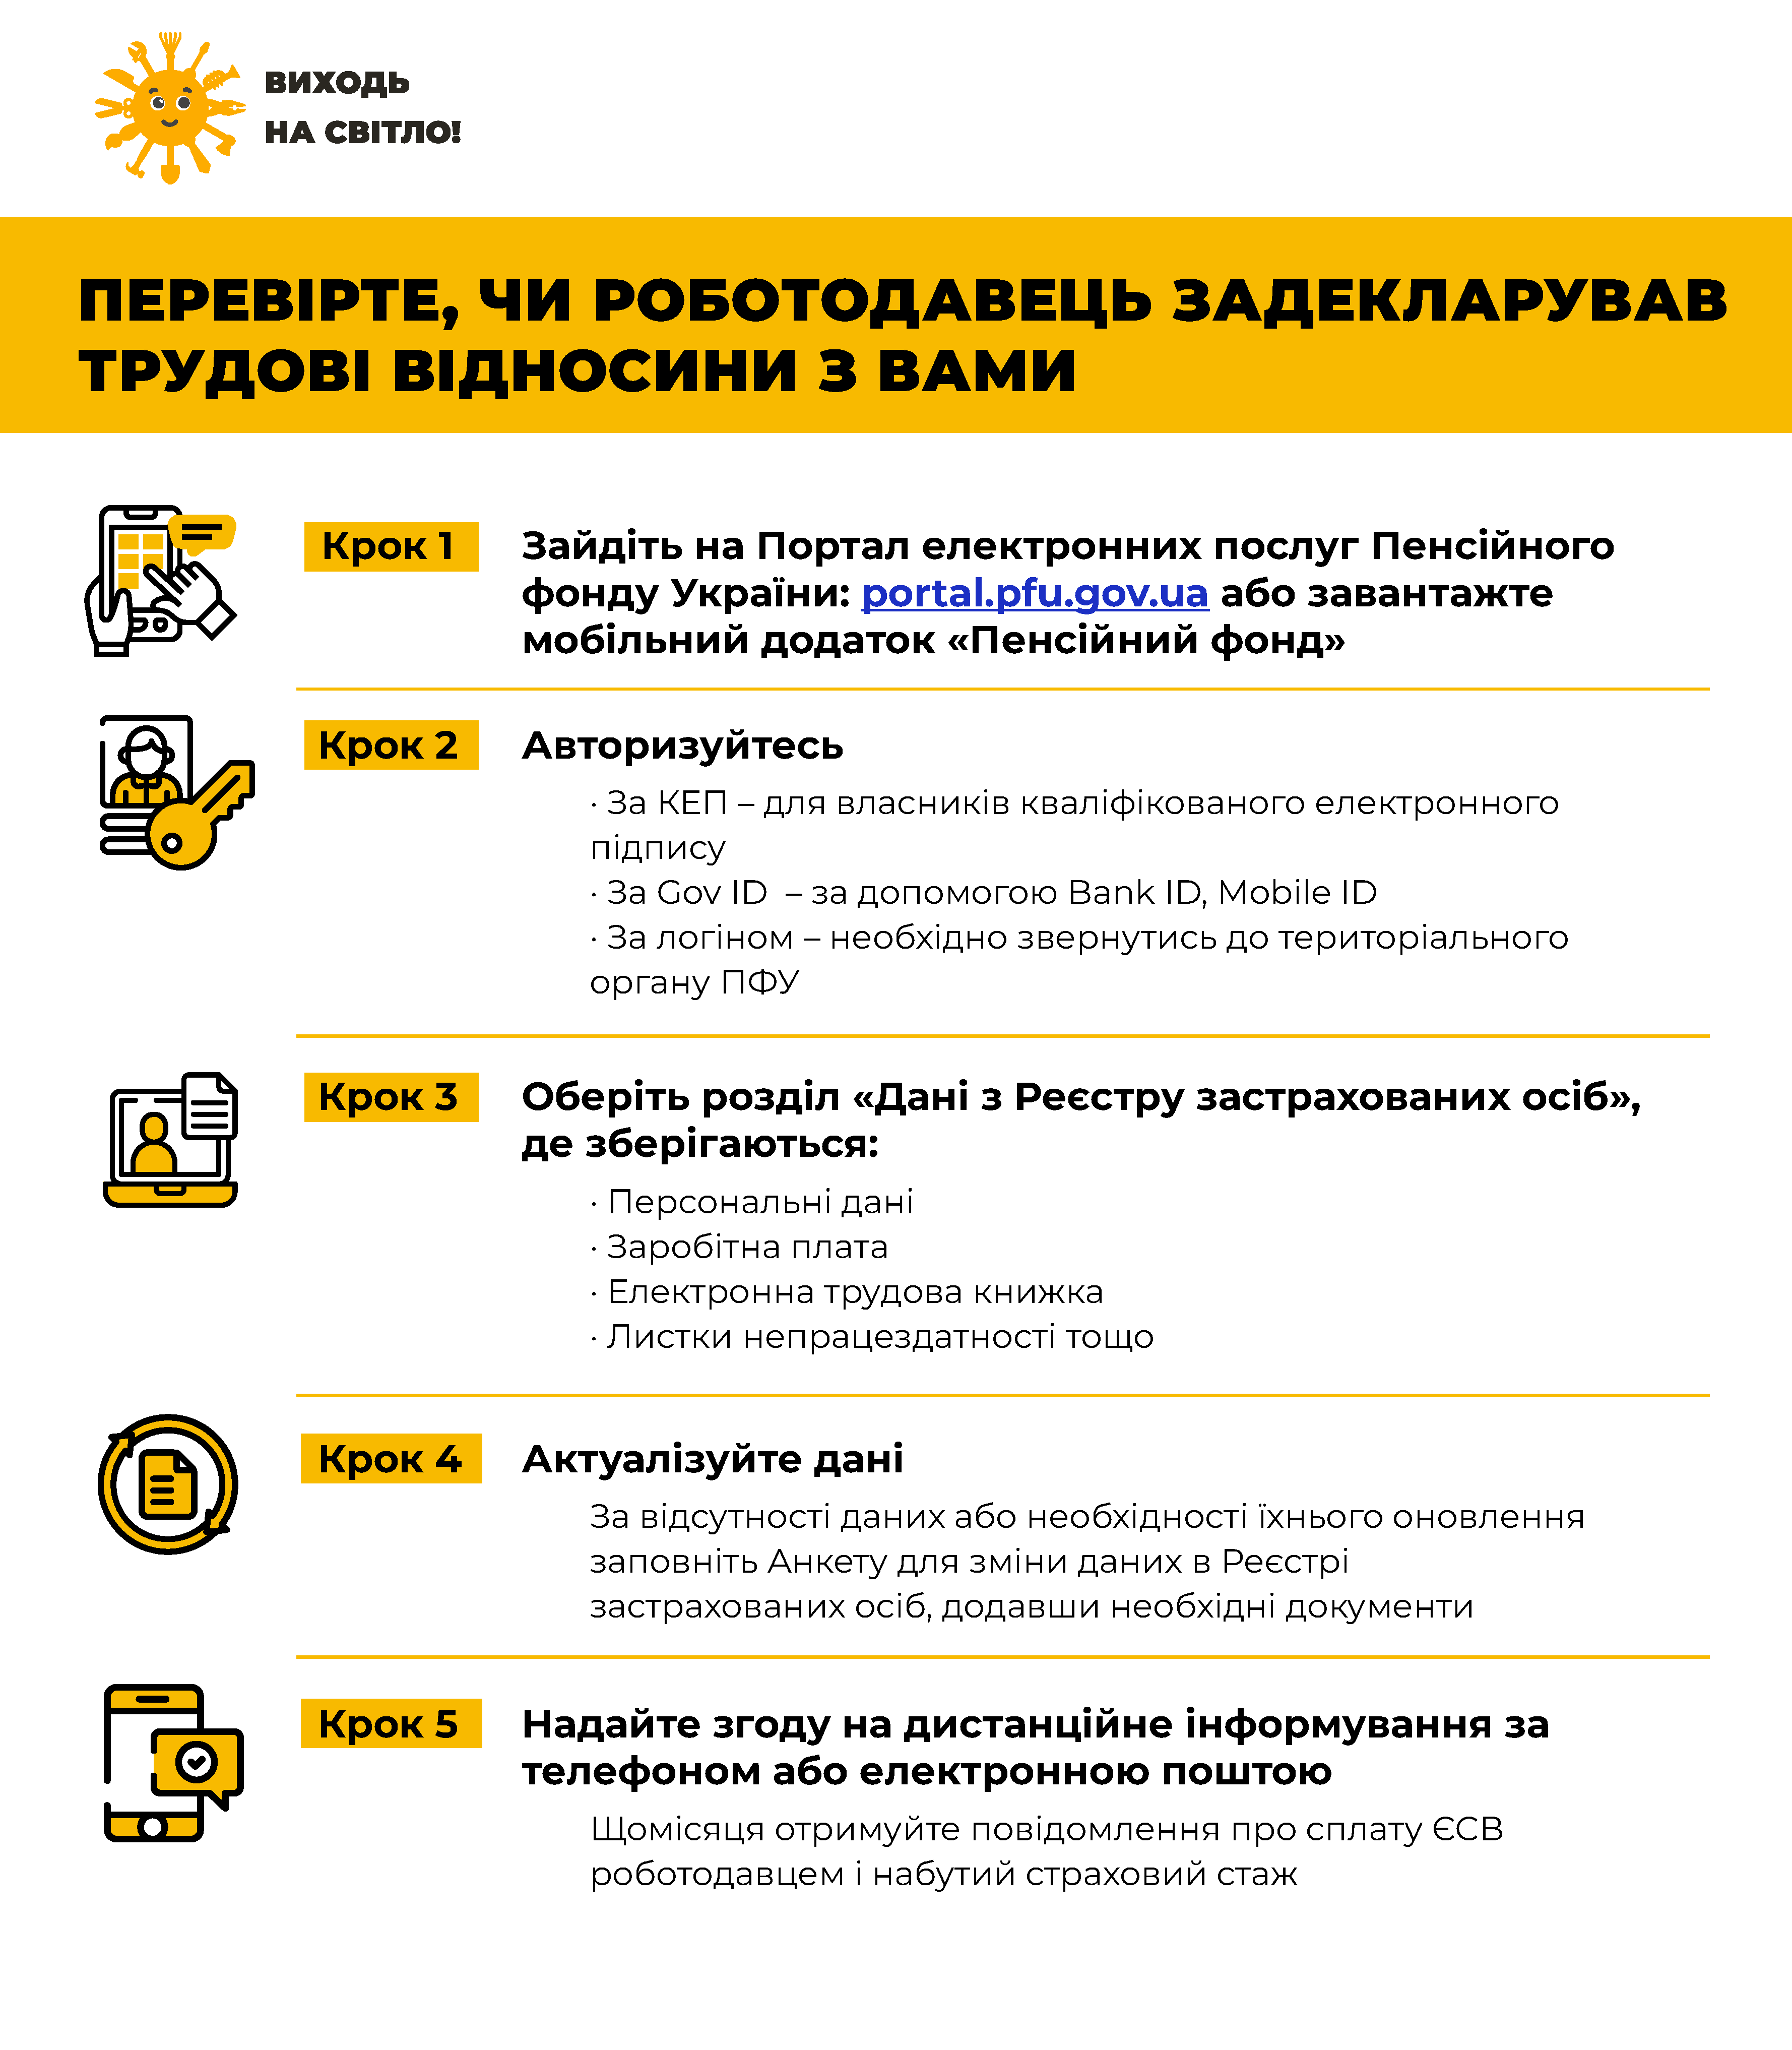 Сайт пенсійний фонд україни